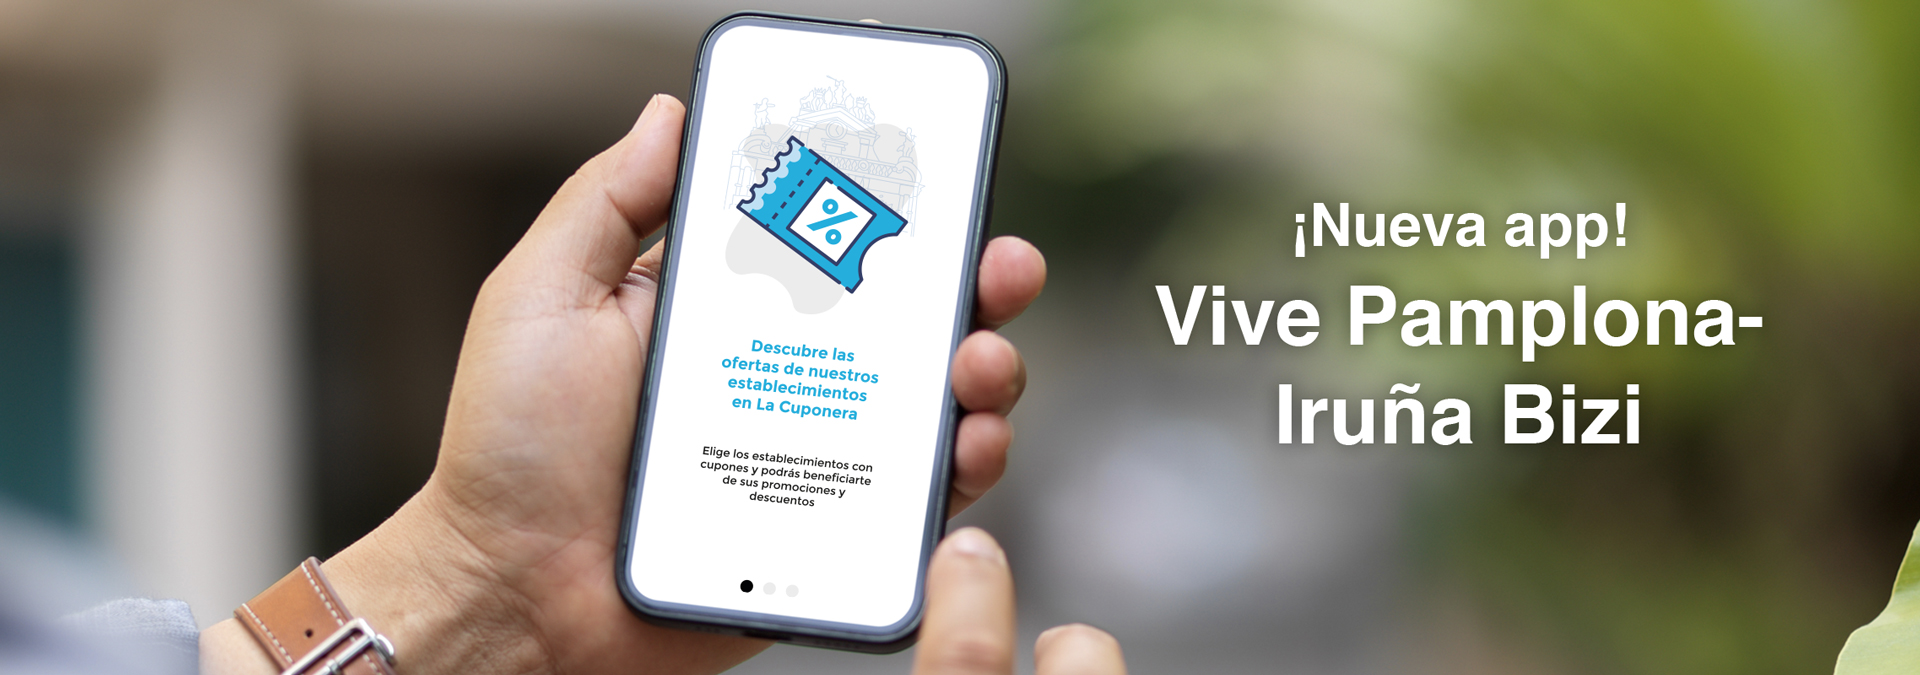 VIVE PAMPLONA-IRUÑA BIZI, una app para revitalizar el comercio local